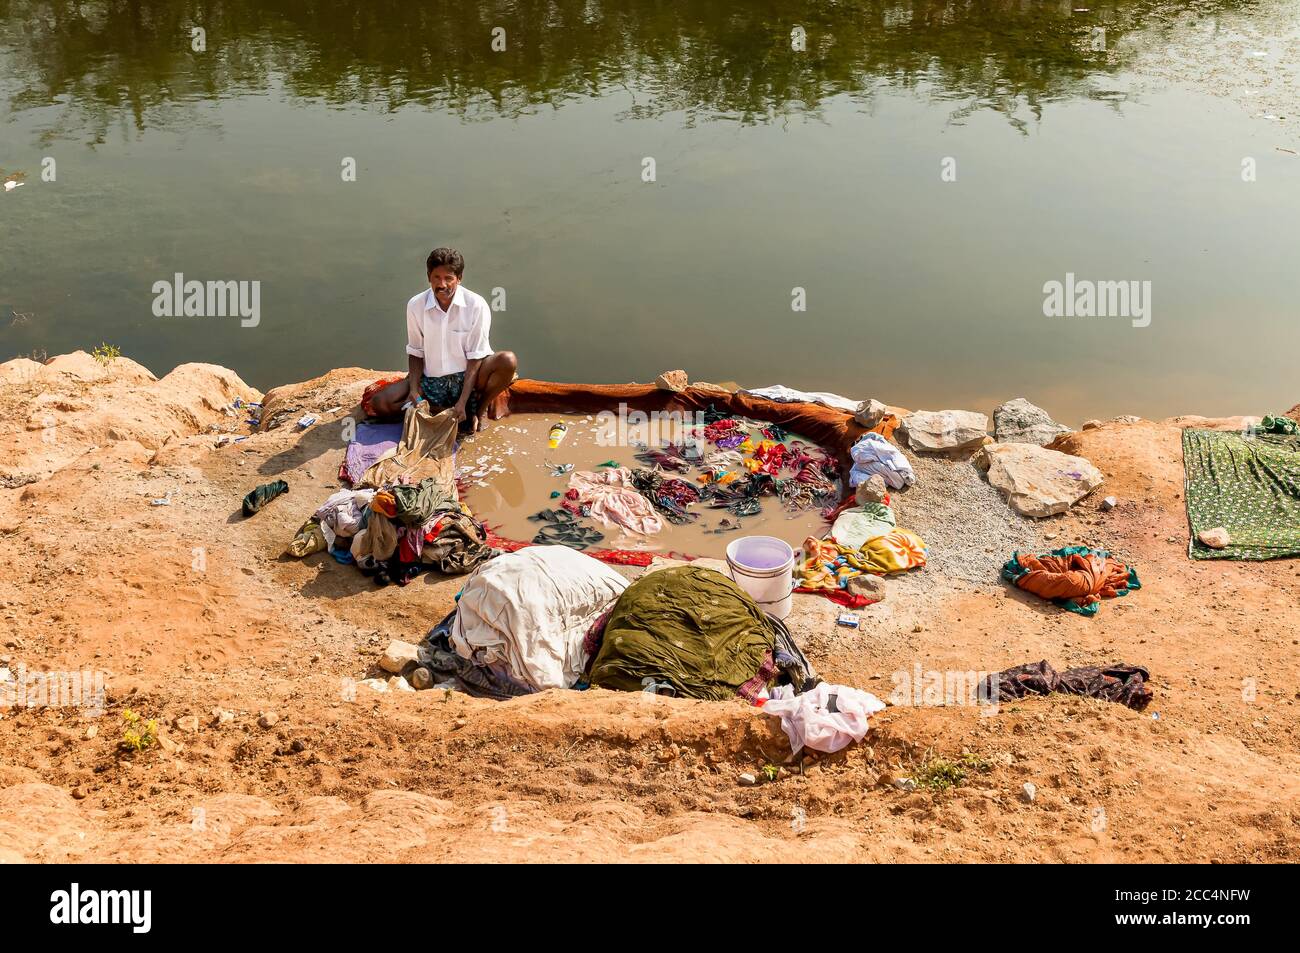 Puttaarthi, Andhra Pradesh, India - 11 gennaio 2013: Un uomo lavando abiti sulle rive del fiume nel villaggio di Puttaarthi, India Foto Stock